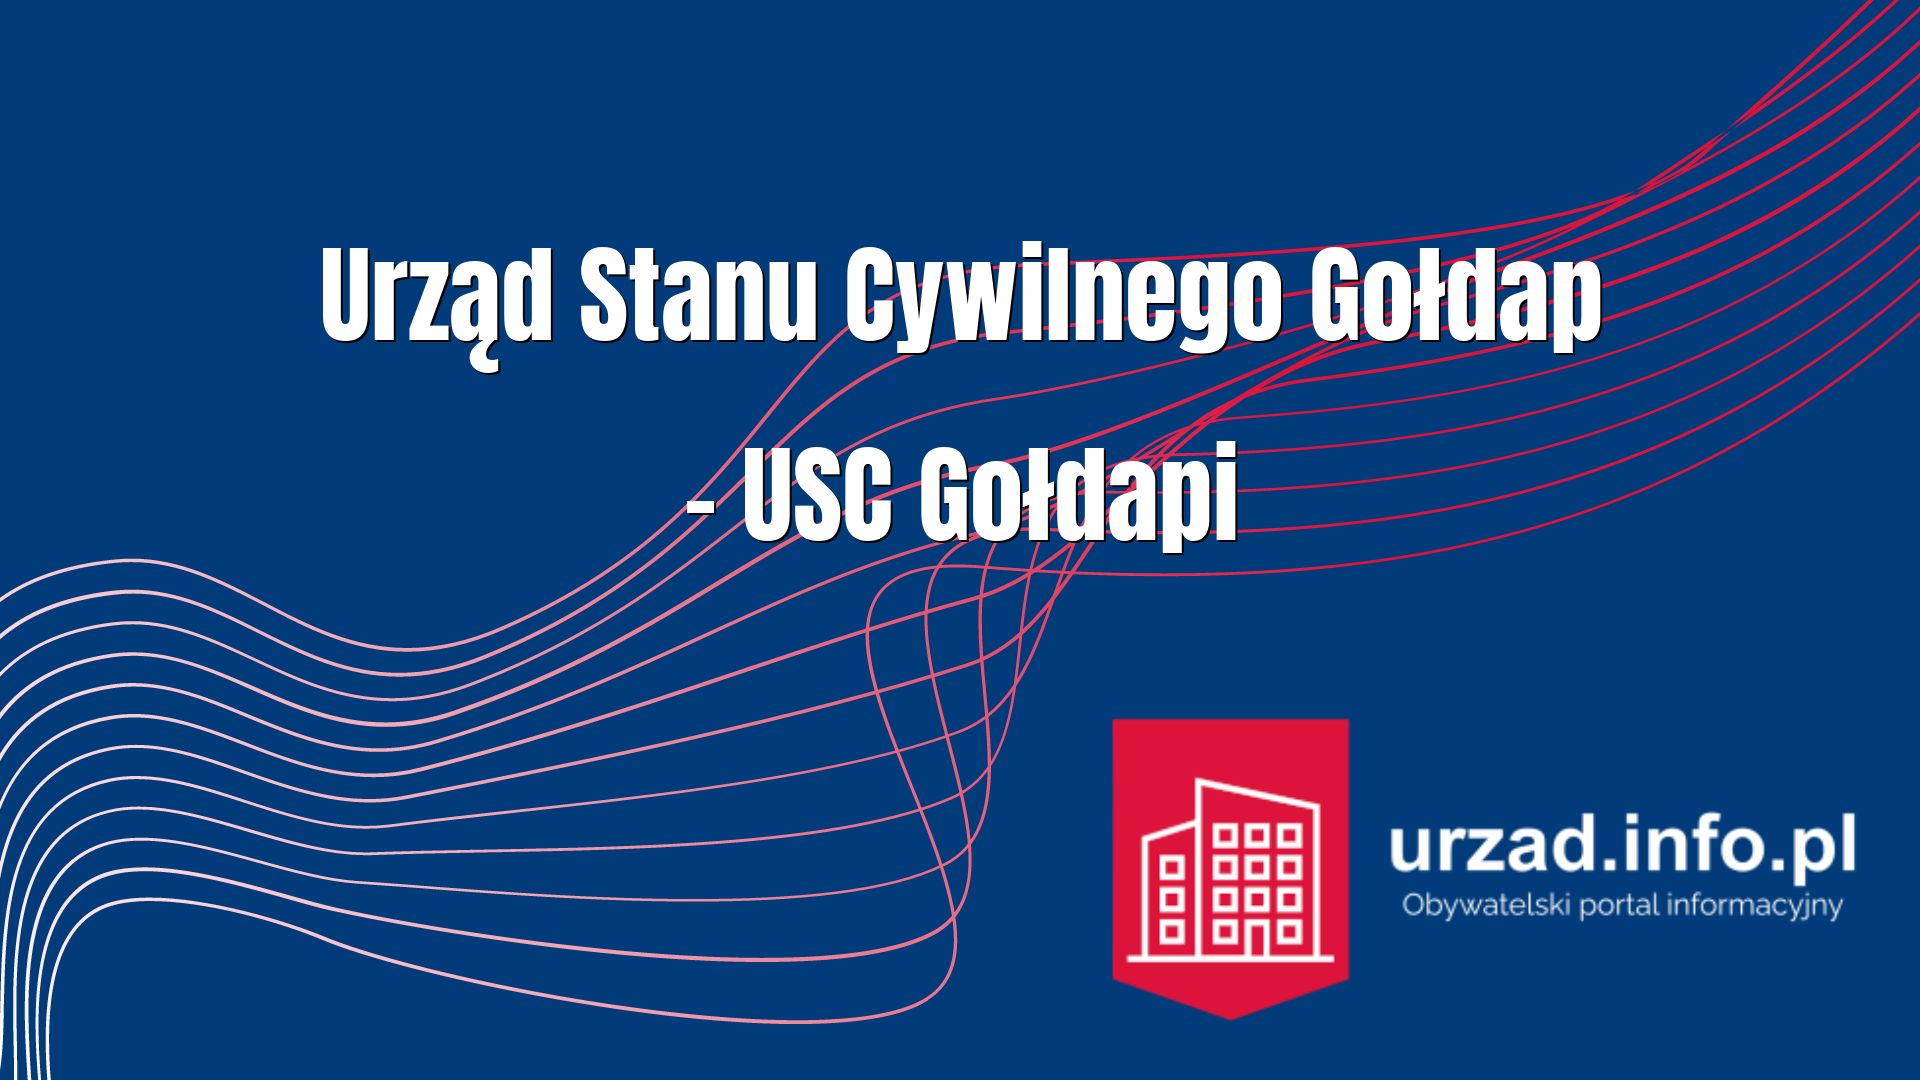 Urząd Stanu Cywilnego Gołdap – USC Gołdapi